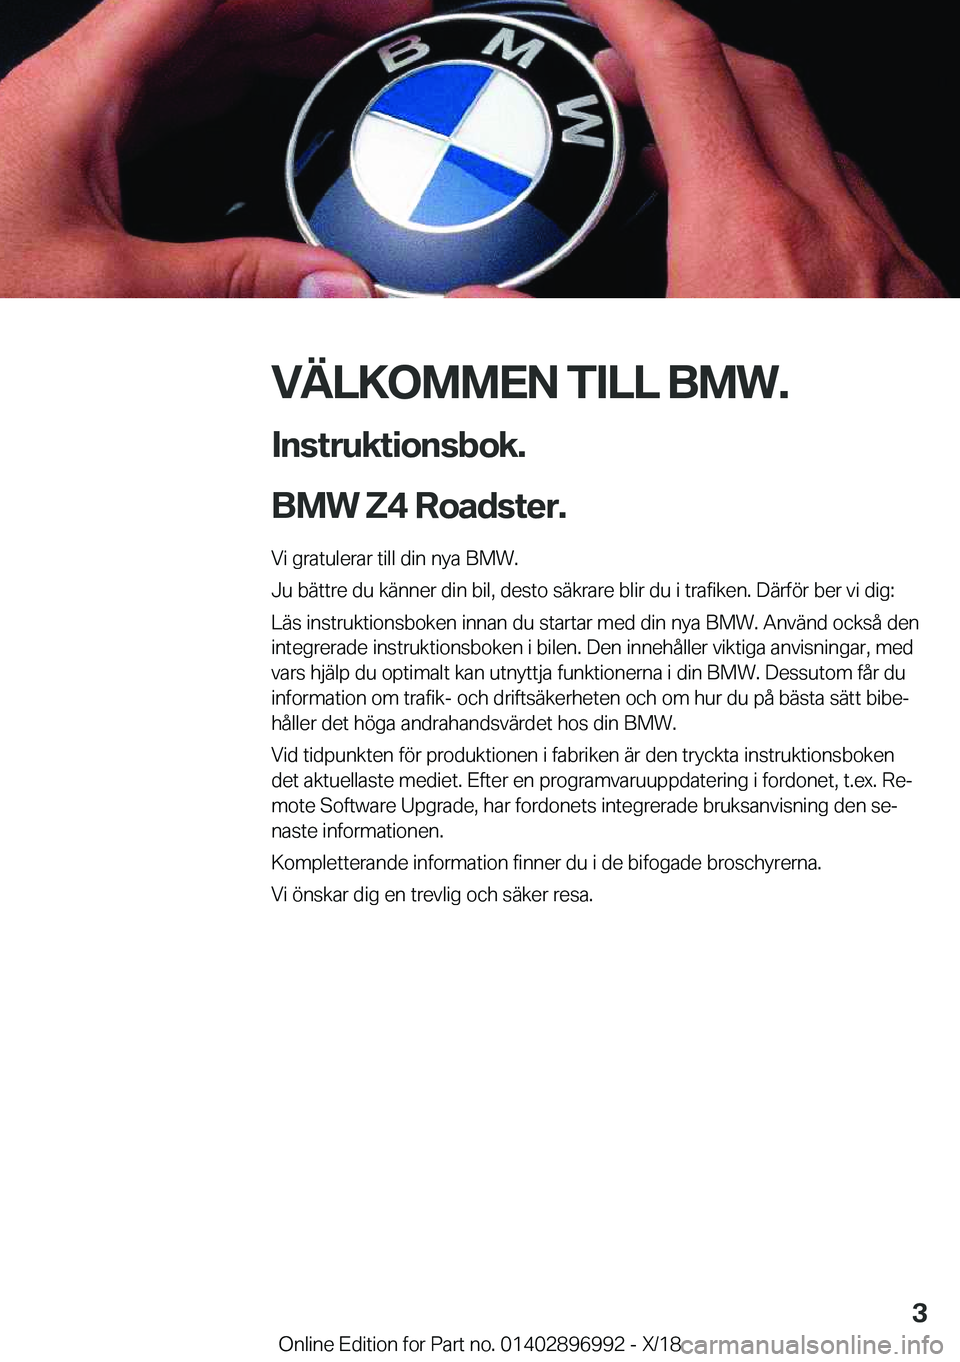 BMW Z4 2019  InstruktionsbÖcker (in Swedish) �V�Ä�L�K�O�M�M�E�N��T�I�L�L��B�M�W�.�I�n�s�t�r�u�k�t�i�o�n�s�b�o�k�.
�B�M�W��Z�4��R�o�a�d�s�t�e�r�.
�V�i��g�r�a�t�u�l�e�r�a�r��t�i�l�l��d�i�n��n�y�a��B�M�W�.
�J�u��b�ä�t�t�r�e��d�u��k�ä